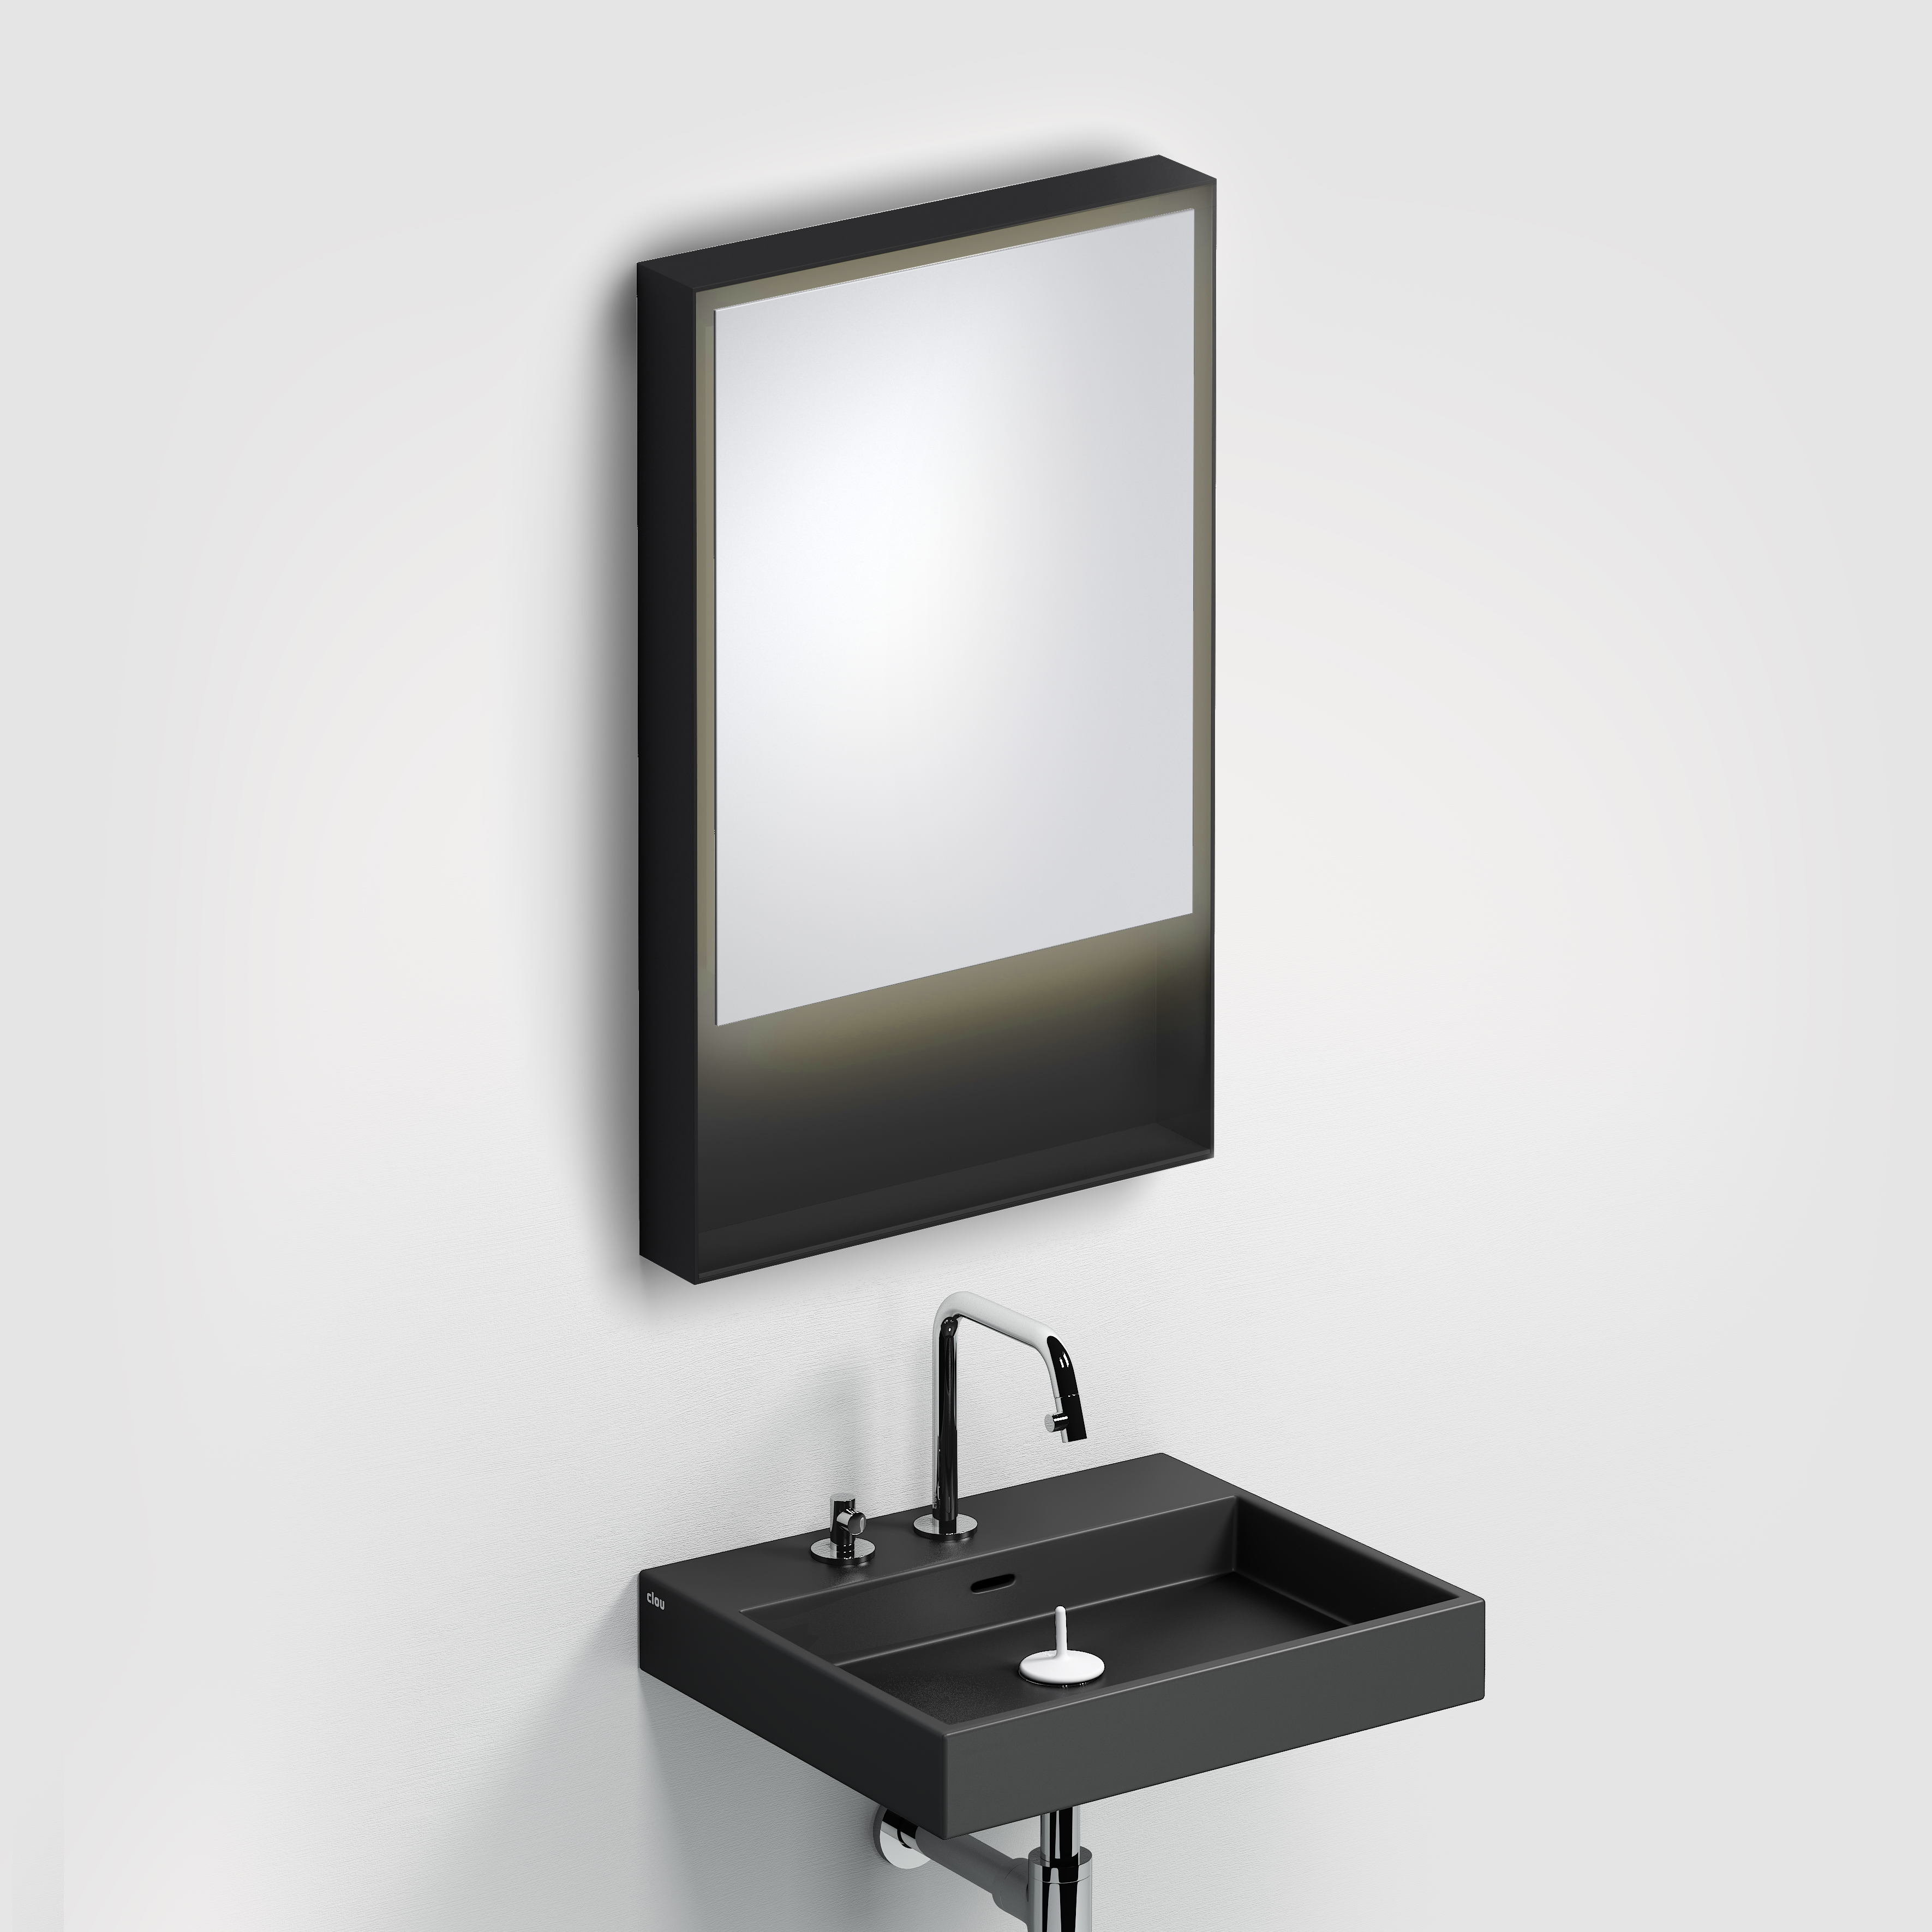 zelf uitzondering onszelf Clou Look at Me spiegel 50cm LED-verlichting IP44 mat zwart CL/08.08.050.21  > Look at Me spiegels met verlichting > Clou > Sanitair > Sanispecials.nl |  Echt alles voor je badkamer, toilet & keuken!